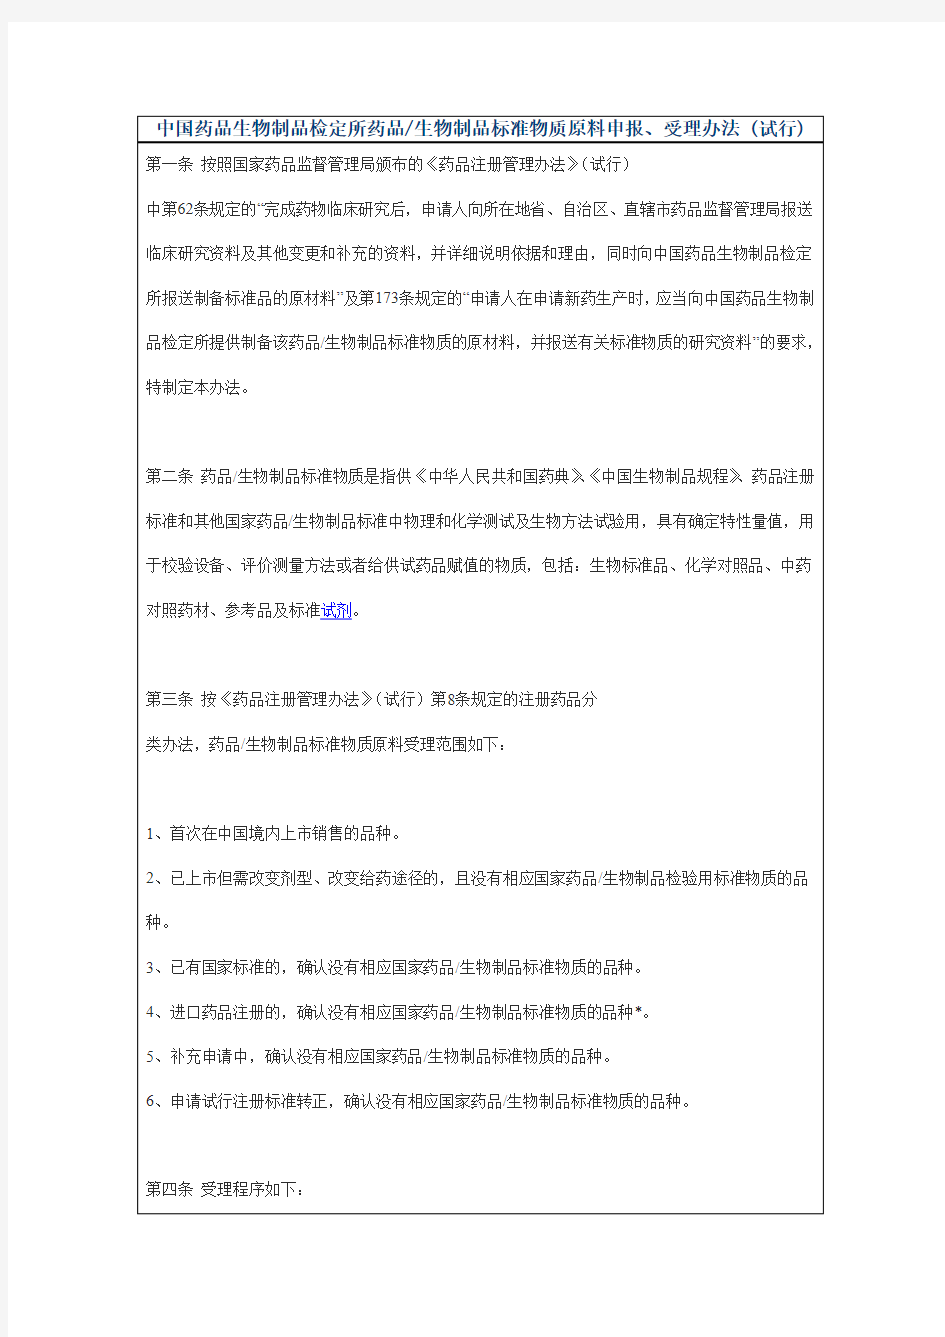 中国药品生物制品检定所药品生物制品标准物质原料申报受理办法 (试行)